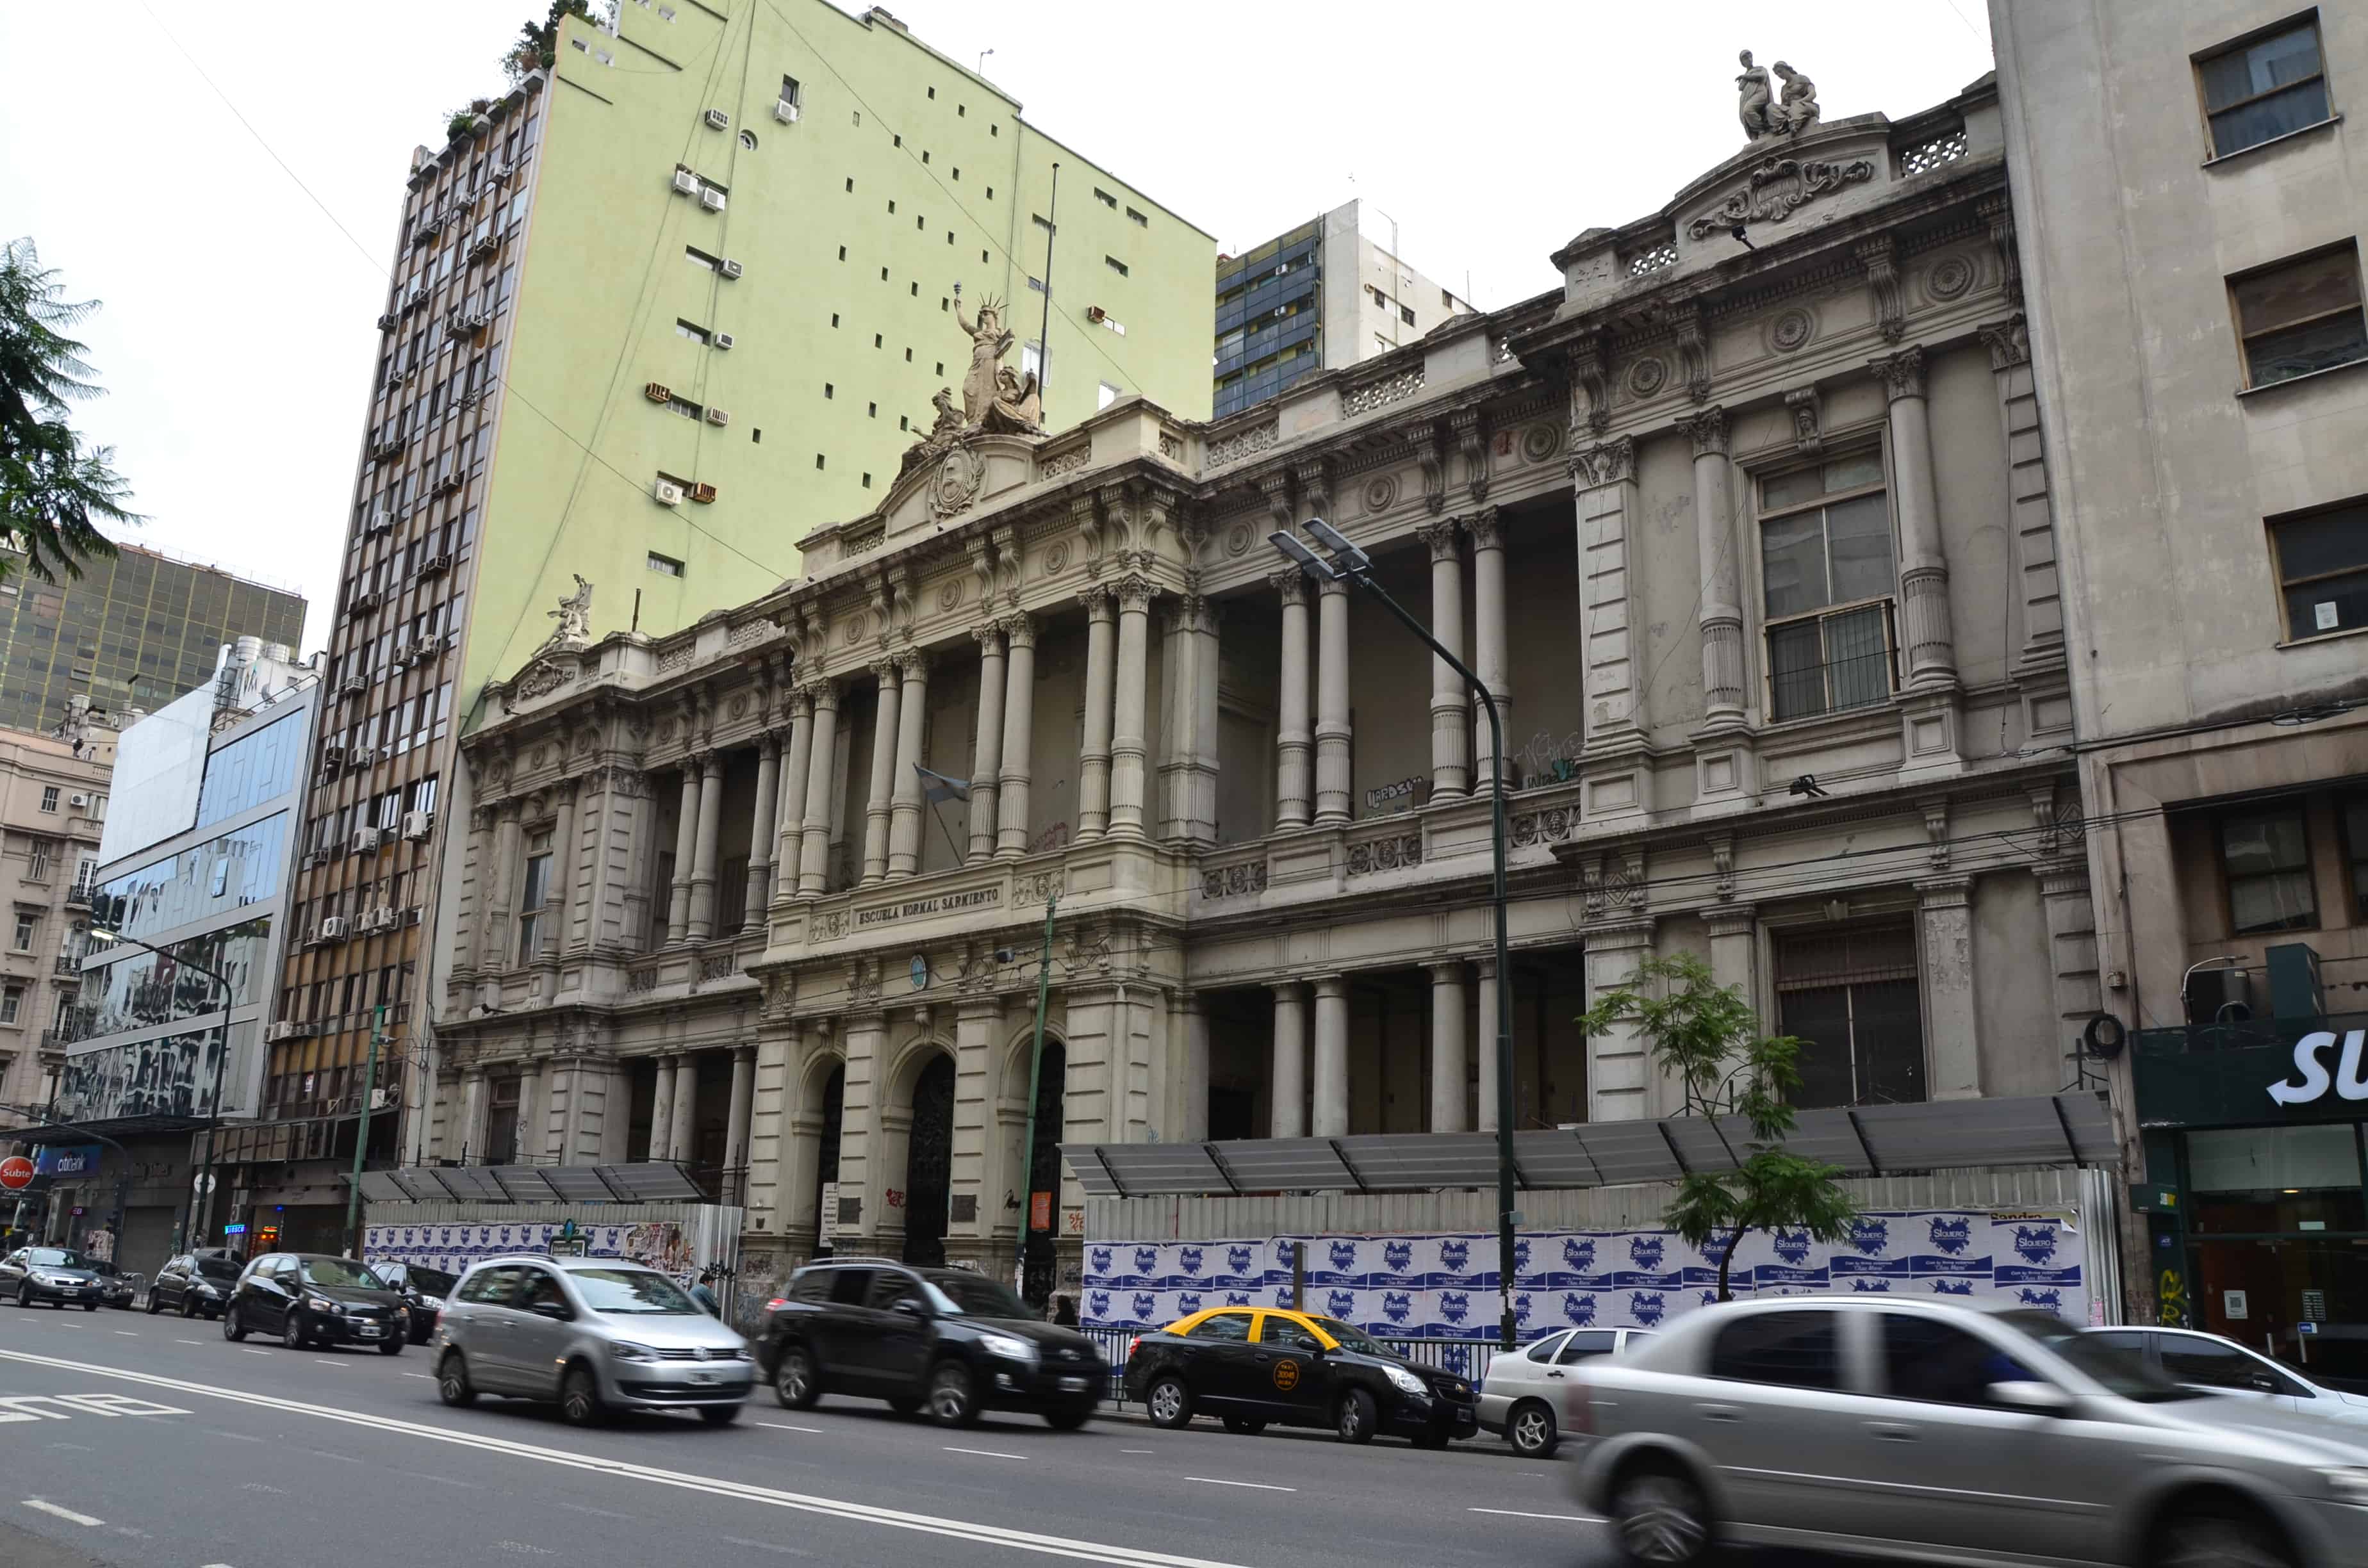 Escuela Normal Domingo Faustino Sarmiento in Buenos Aires, Argentina